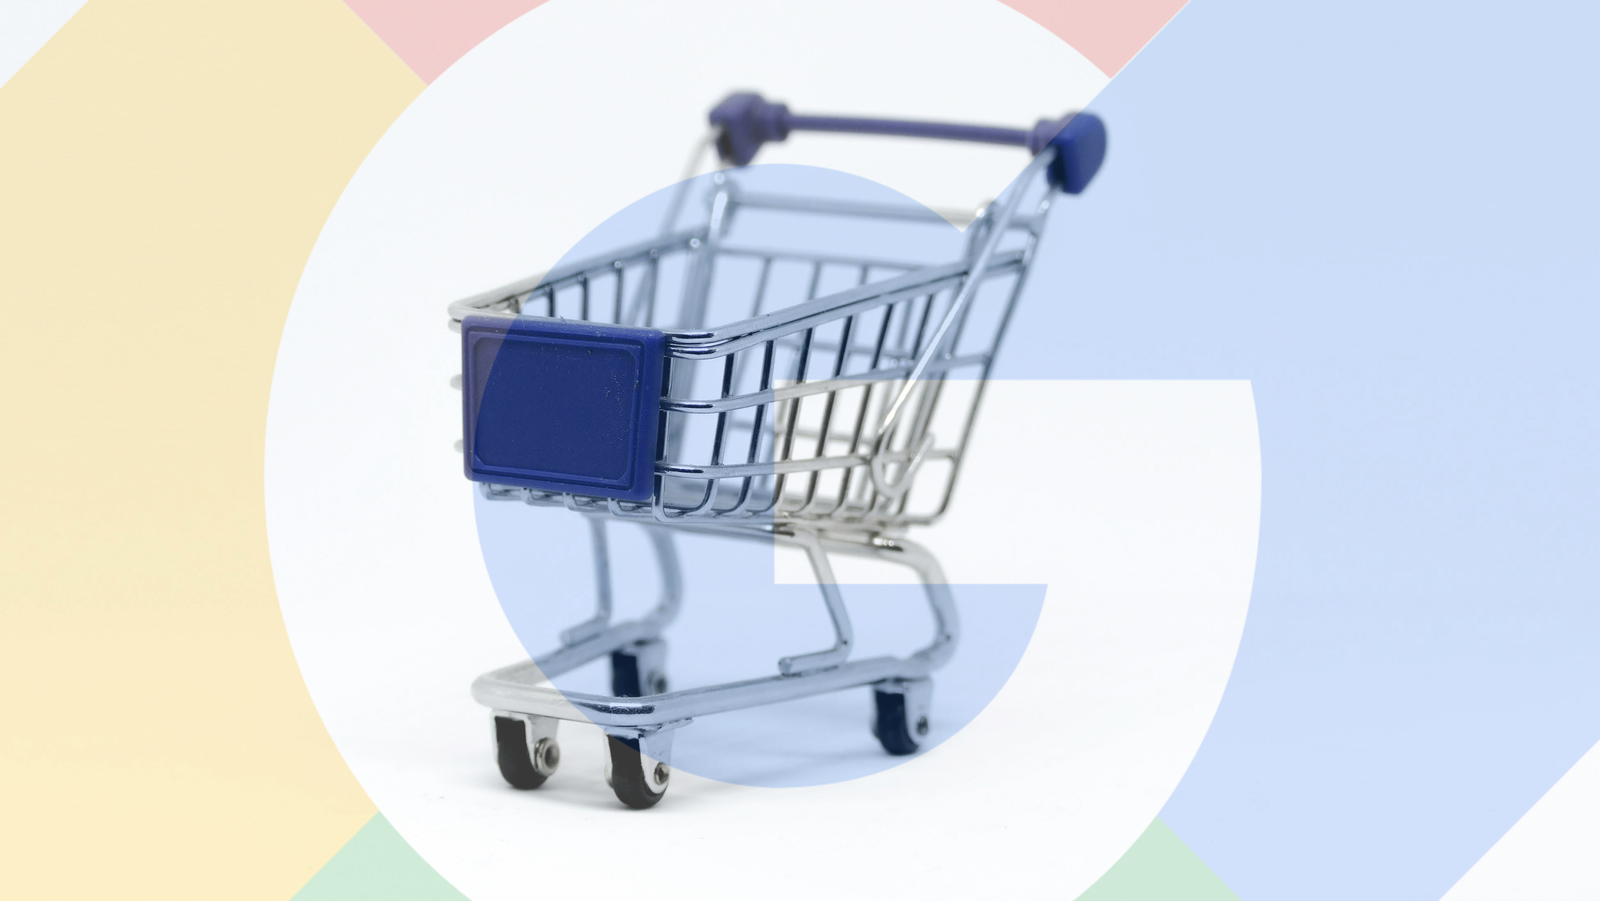 Google Shopping shopping cart 